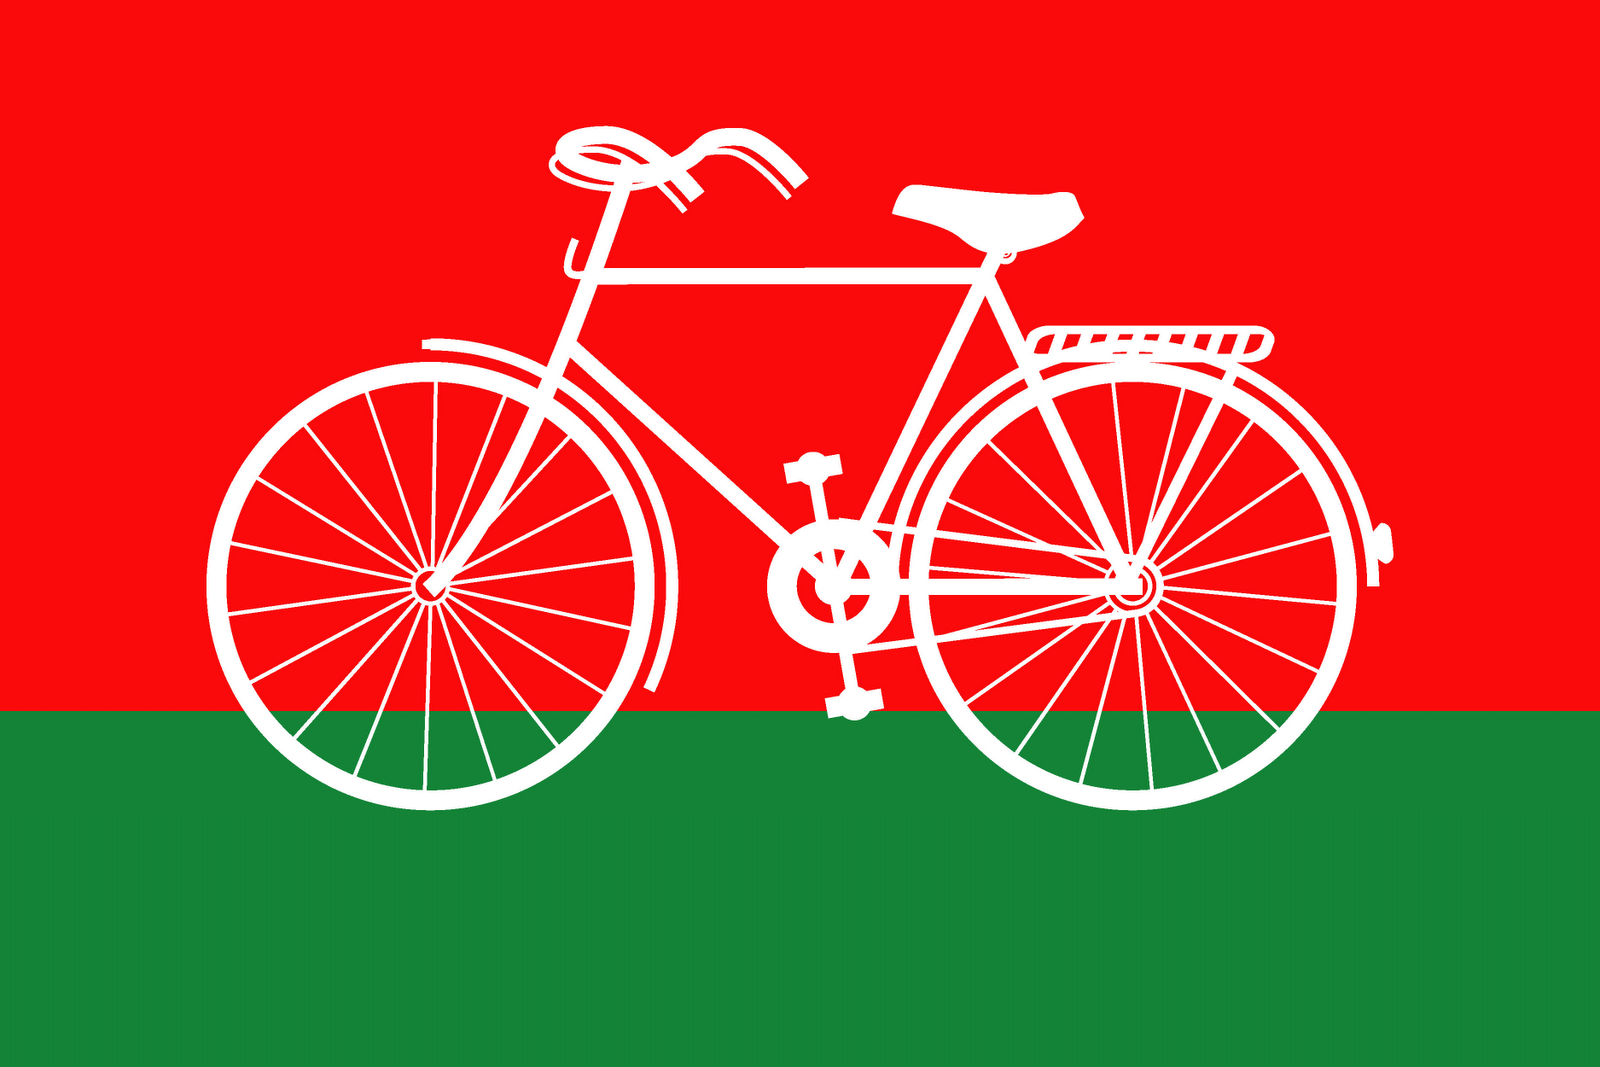 Samajwadi Party Logo and Flag | Free Indian Logos